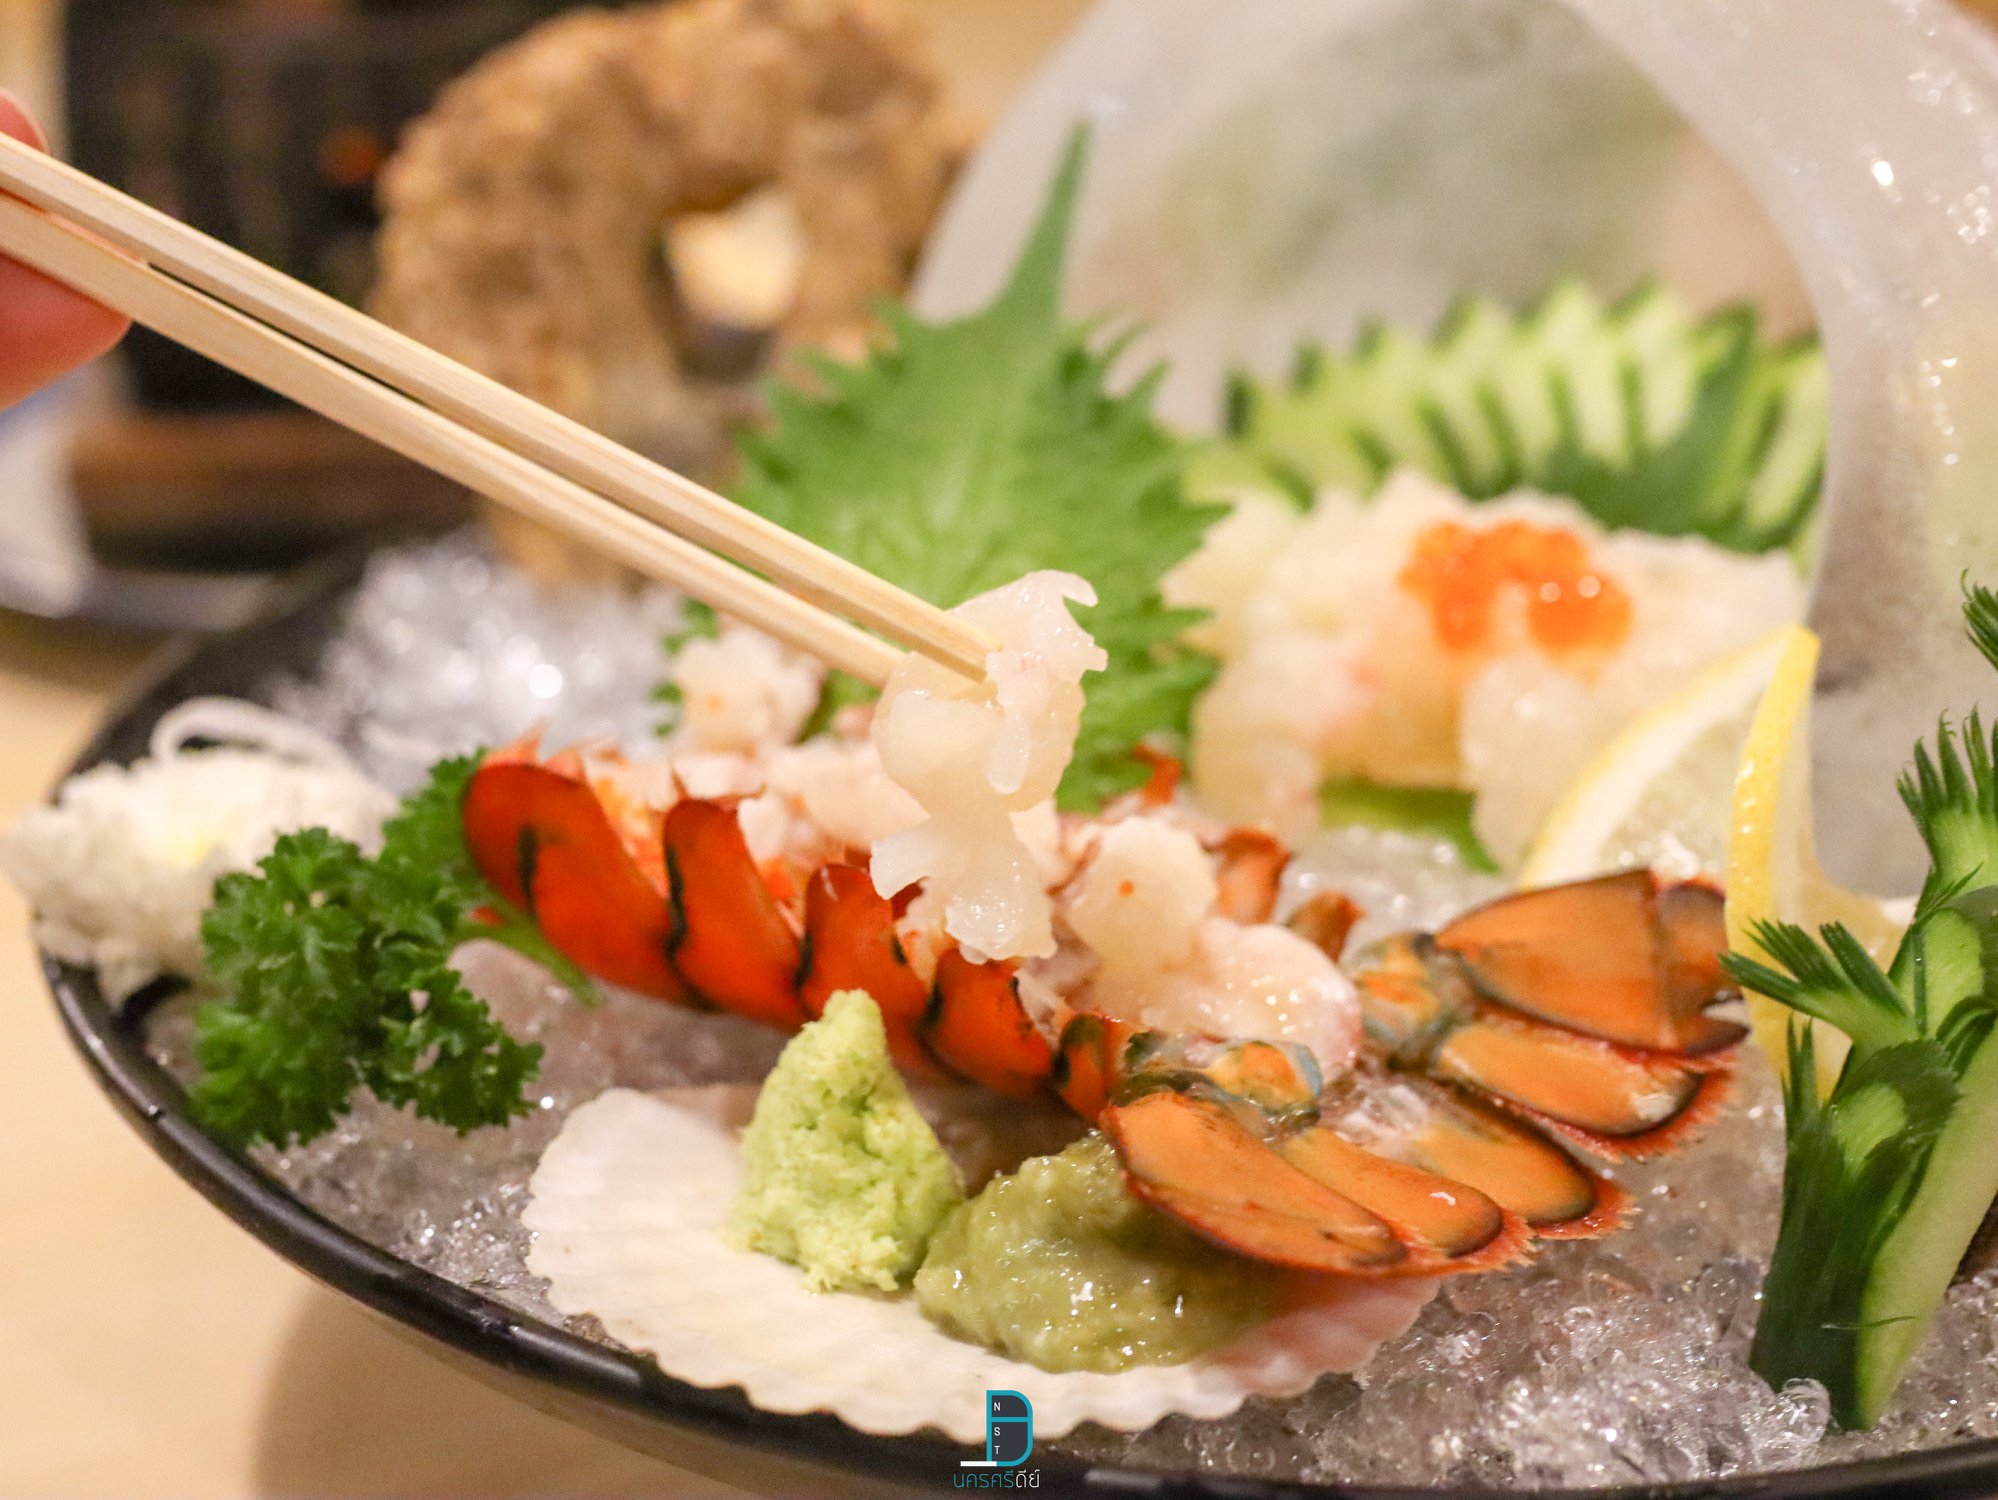  กุ้งล็อปเตอร์ซาซิมิ-เนื้อดีย์จริงไรจริง hatyaisasimi,ของกิน,หาดใหญ่ซาซิมิ,ร้านอาหารญี่ปุ่น,อร่อย,จุดเช็คอิน